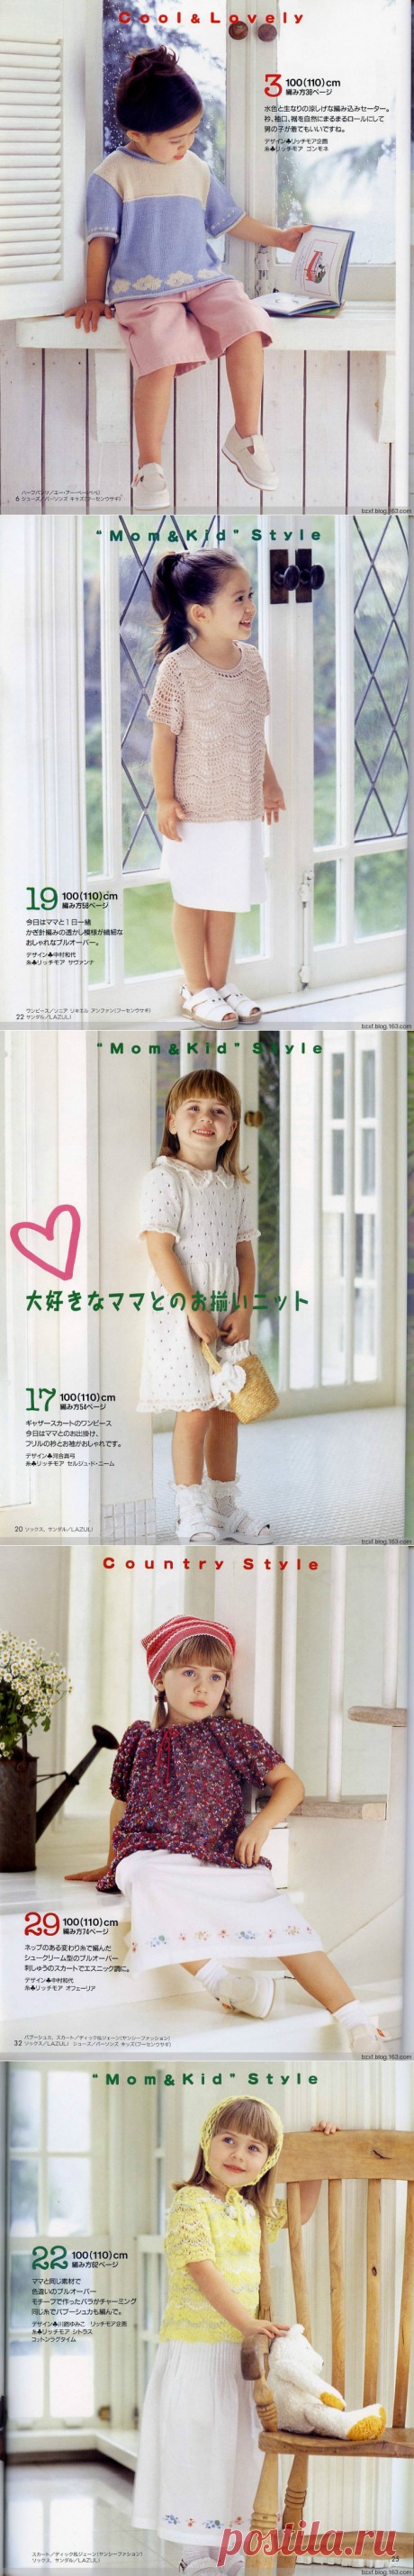 BIANZHI Size 100-120 - 编织幸福的日志 - 网易博客